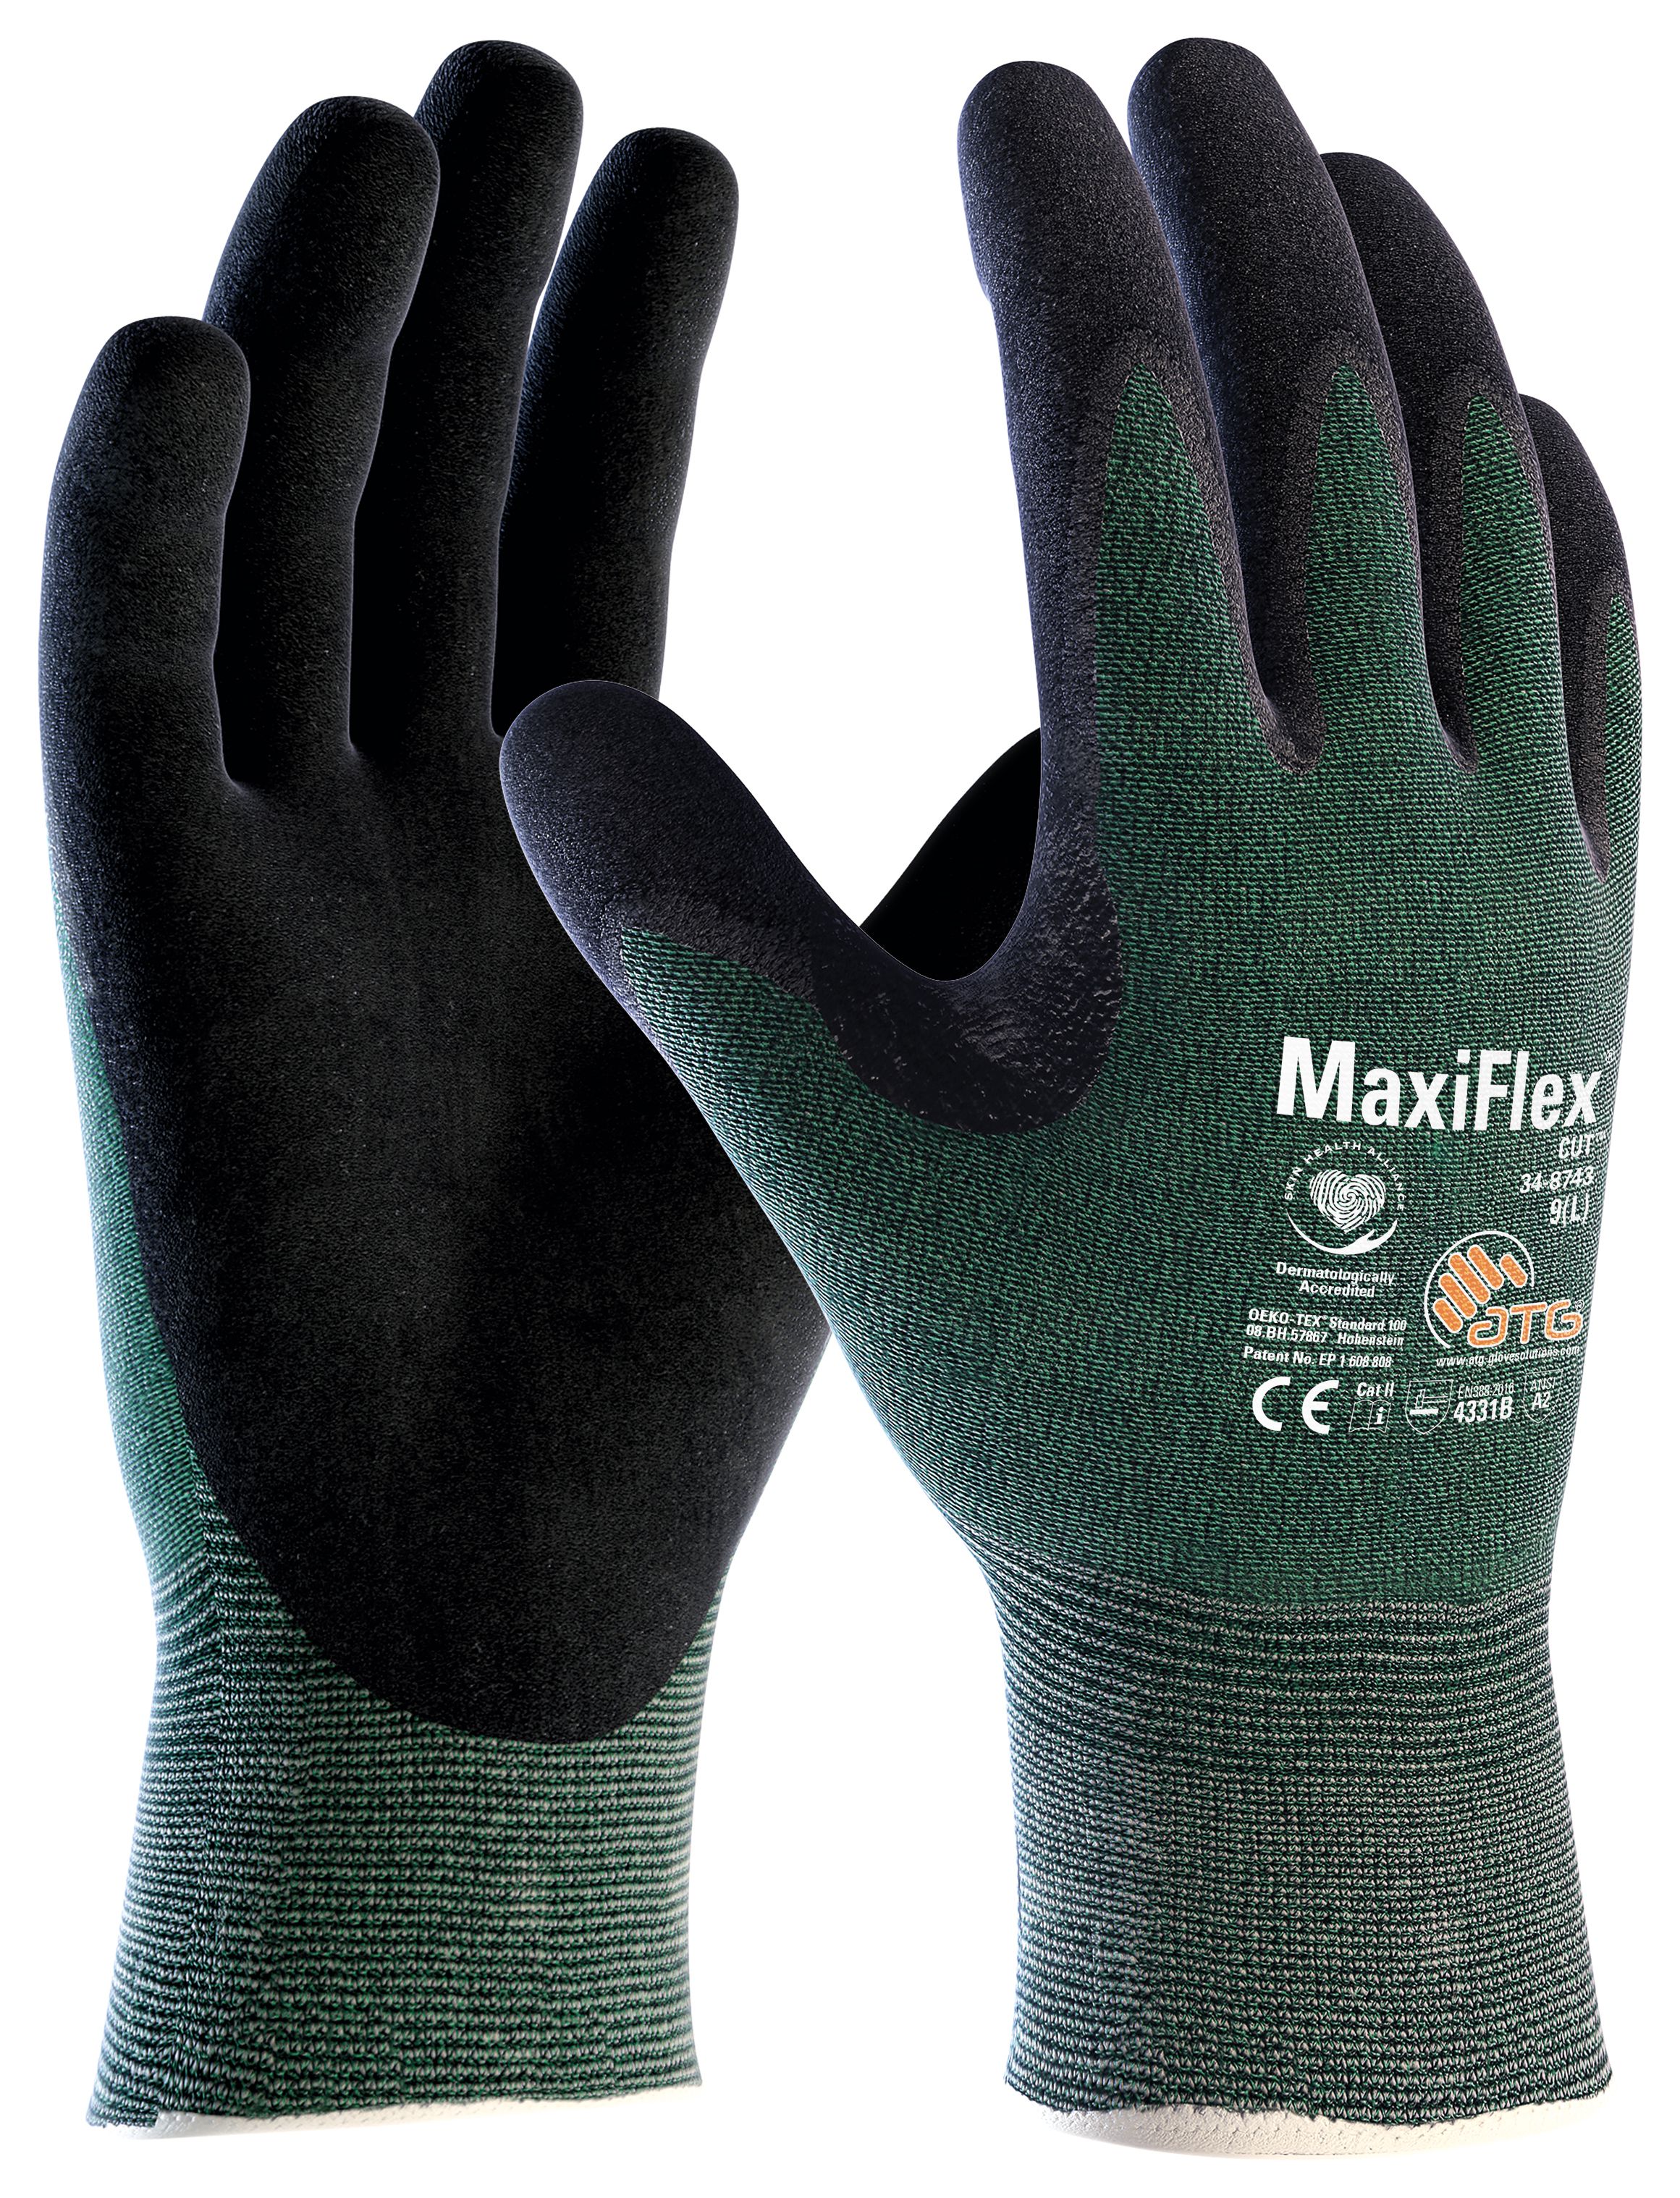 ATG 34-8743 MaxiCut Level Three Work Gloves - Large Size 9